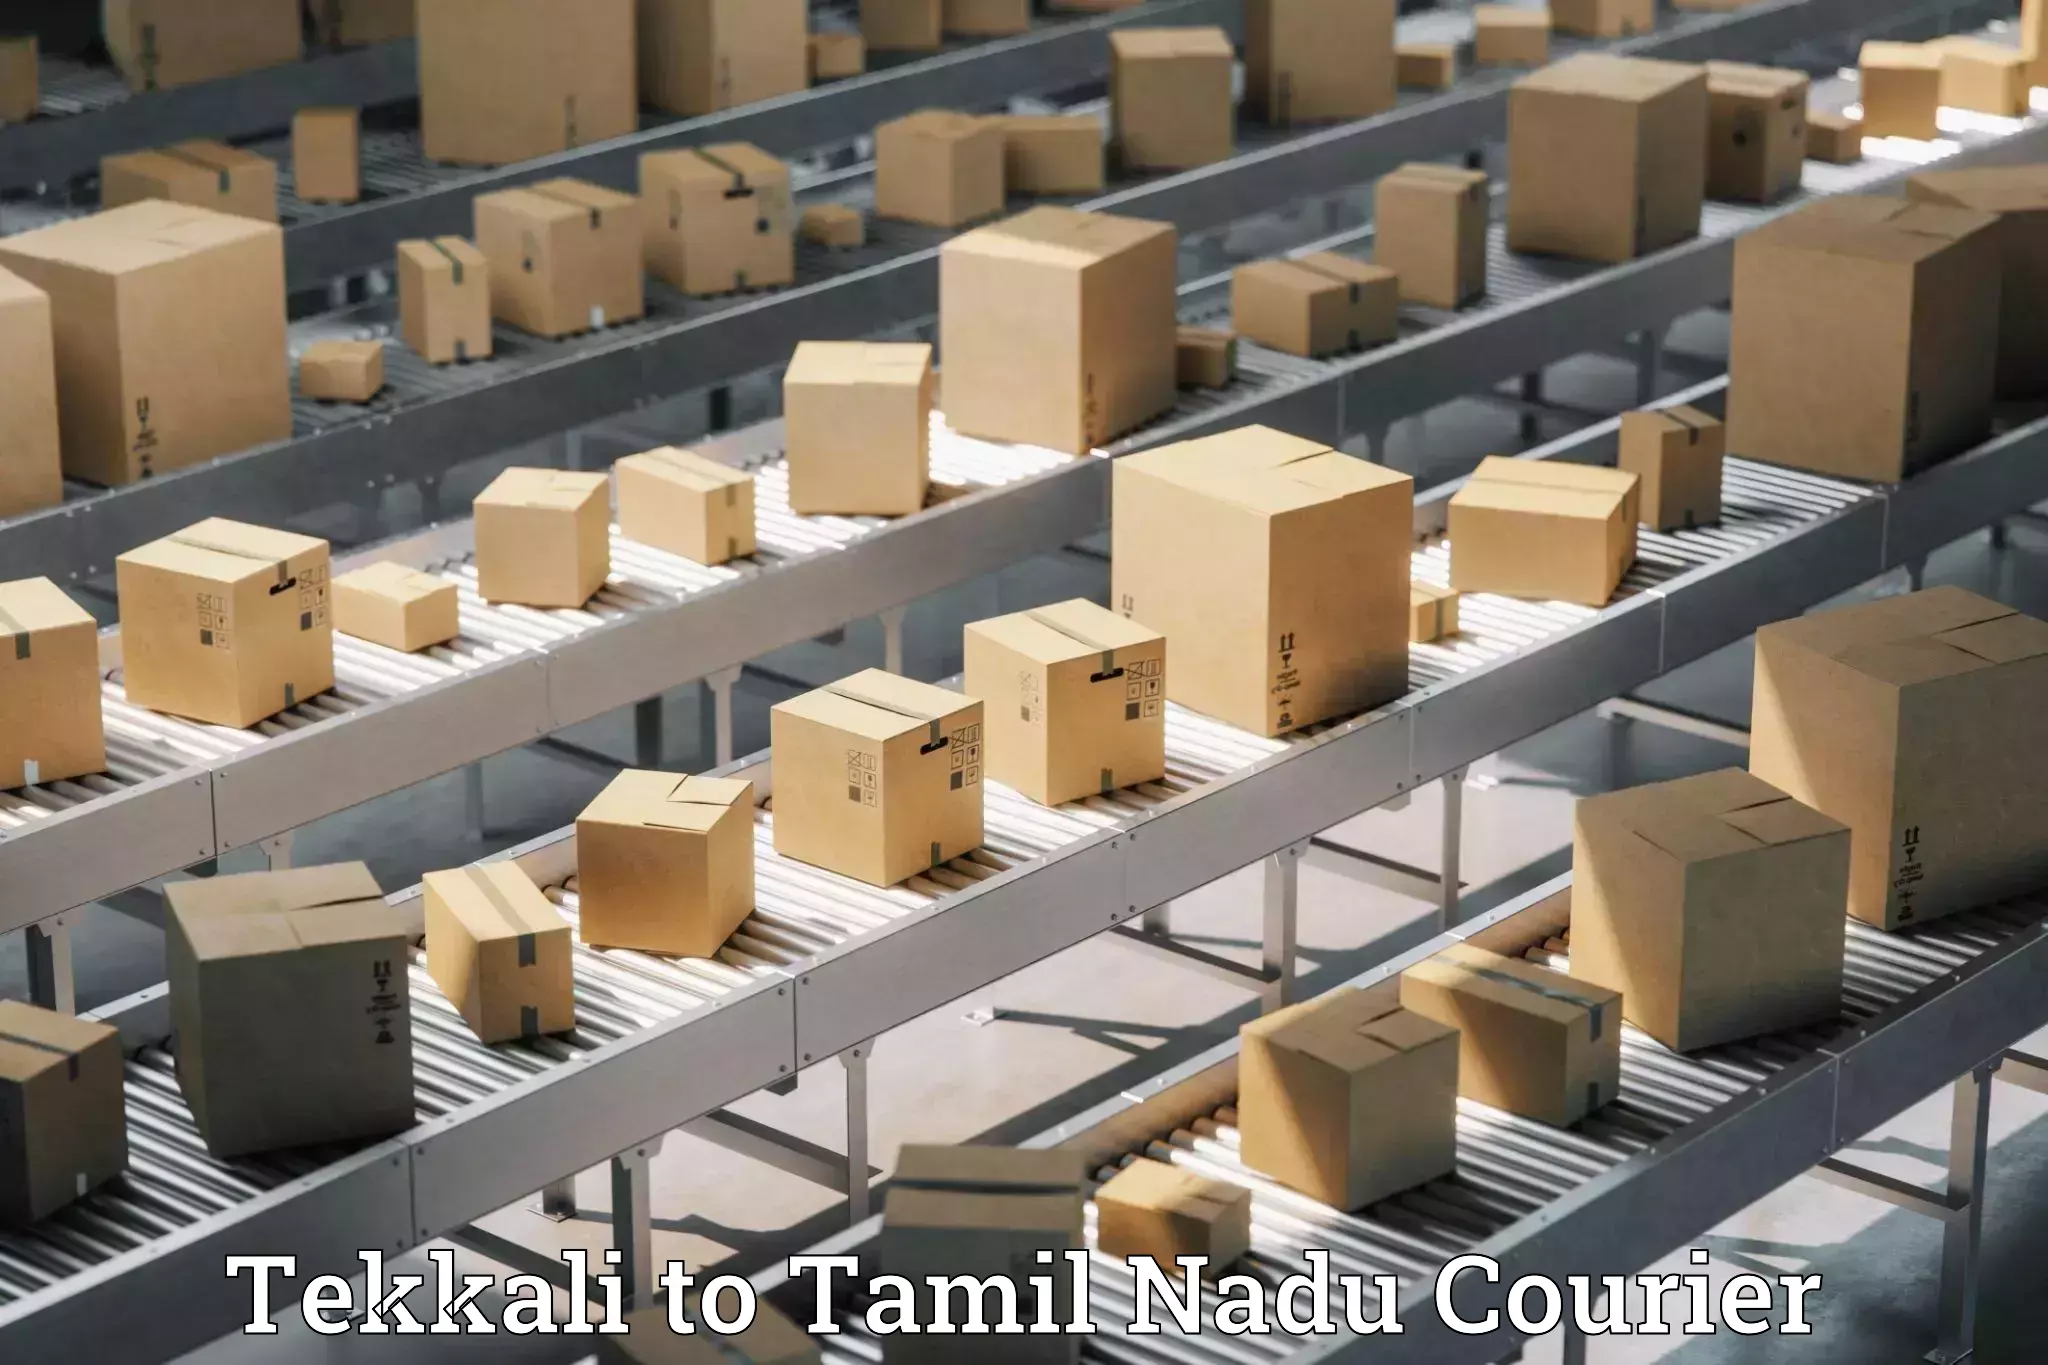 Baggage shipping service Tekkali to Tamil Nadu